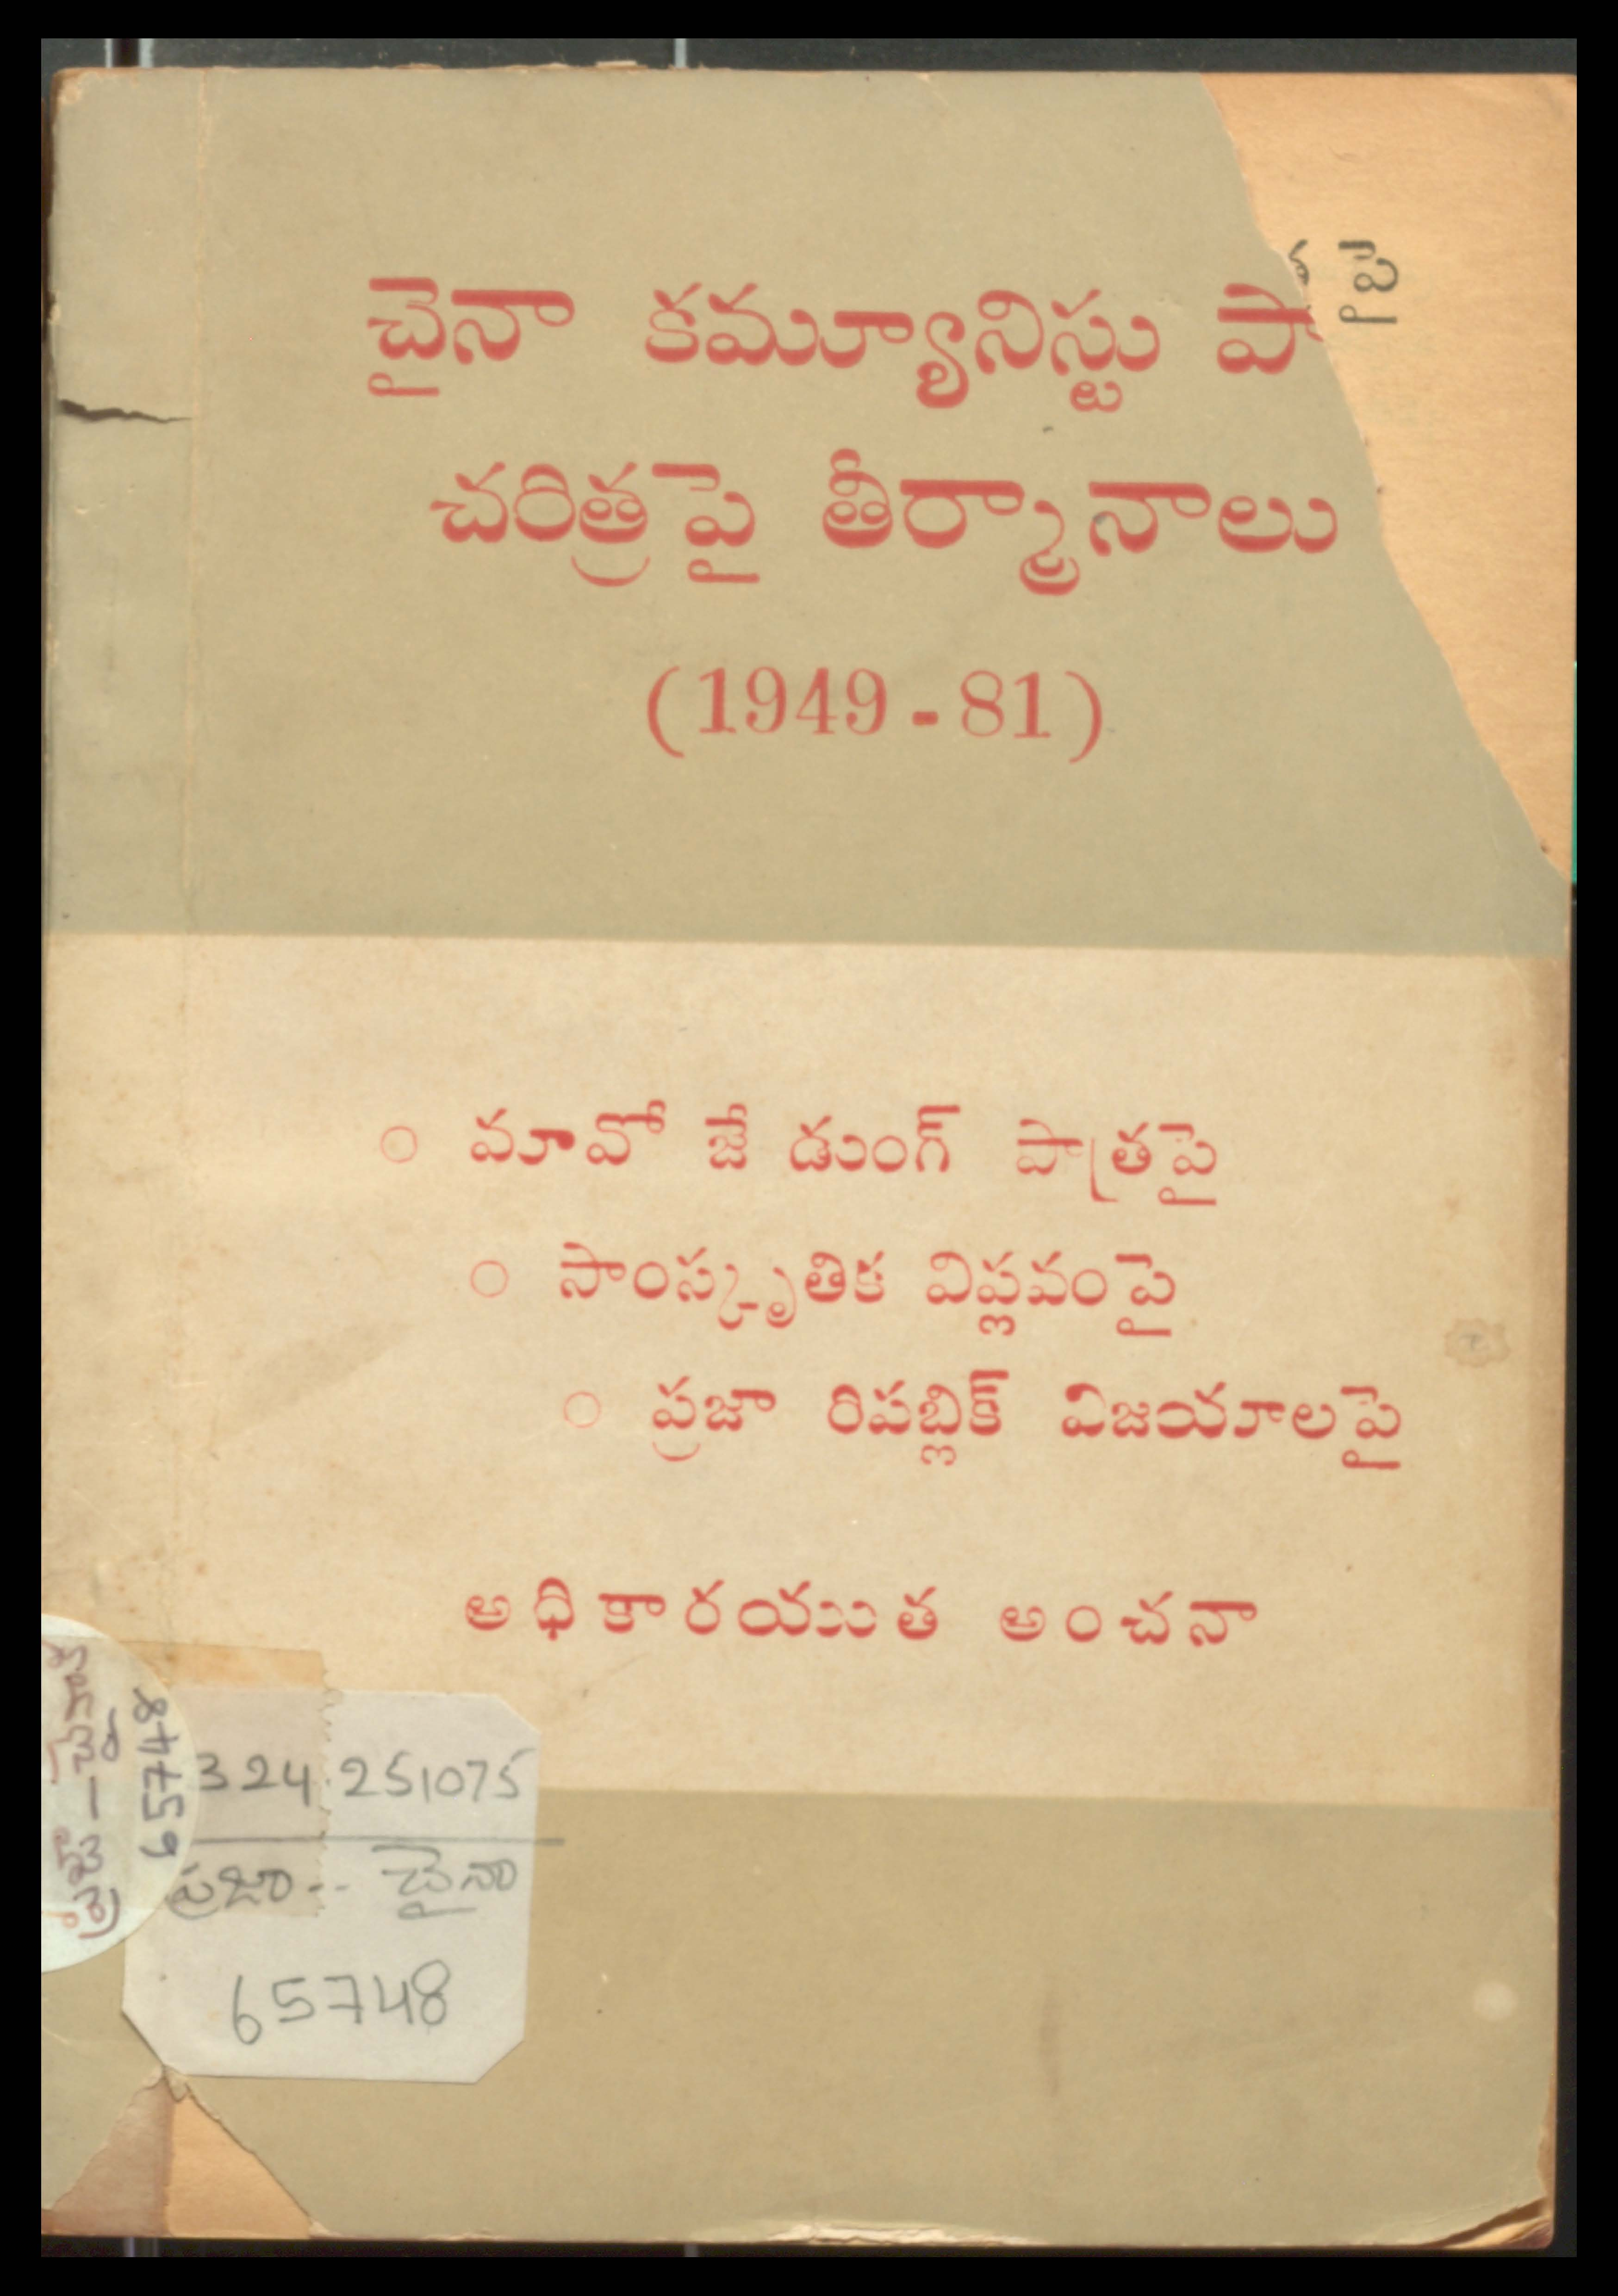 చైనా కమ్యూనిస్టు పార్టీ చరిత్ర పై తీర్మునాలు 1949-81